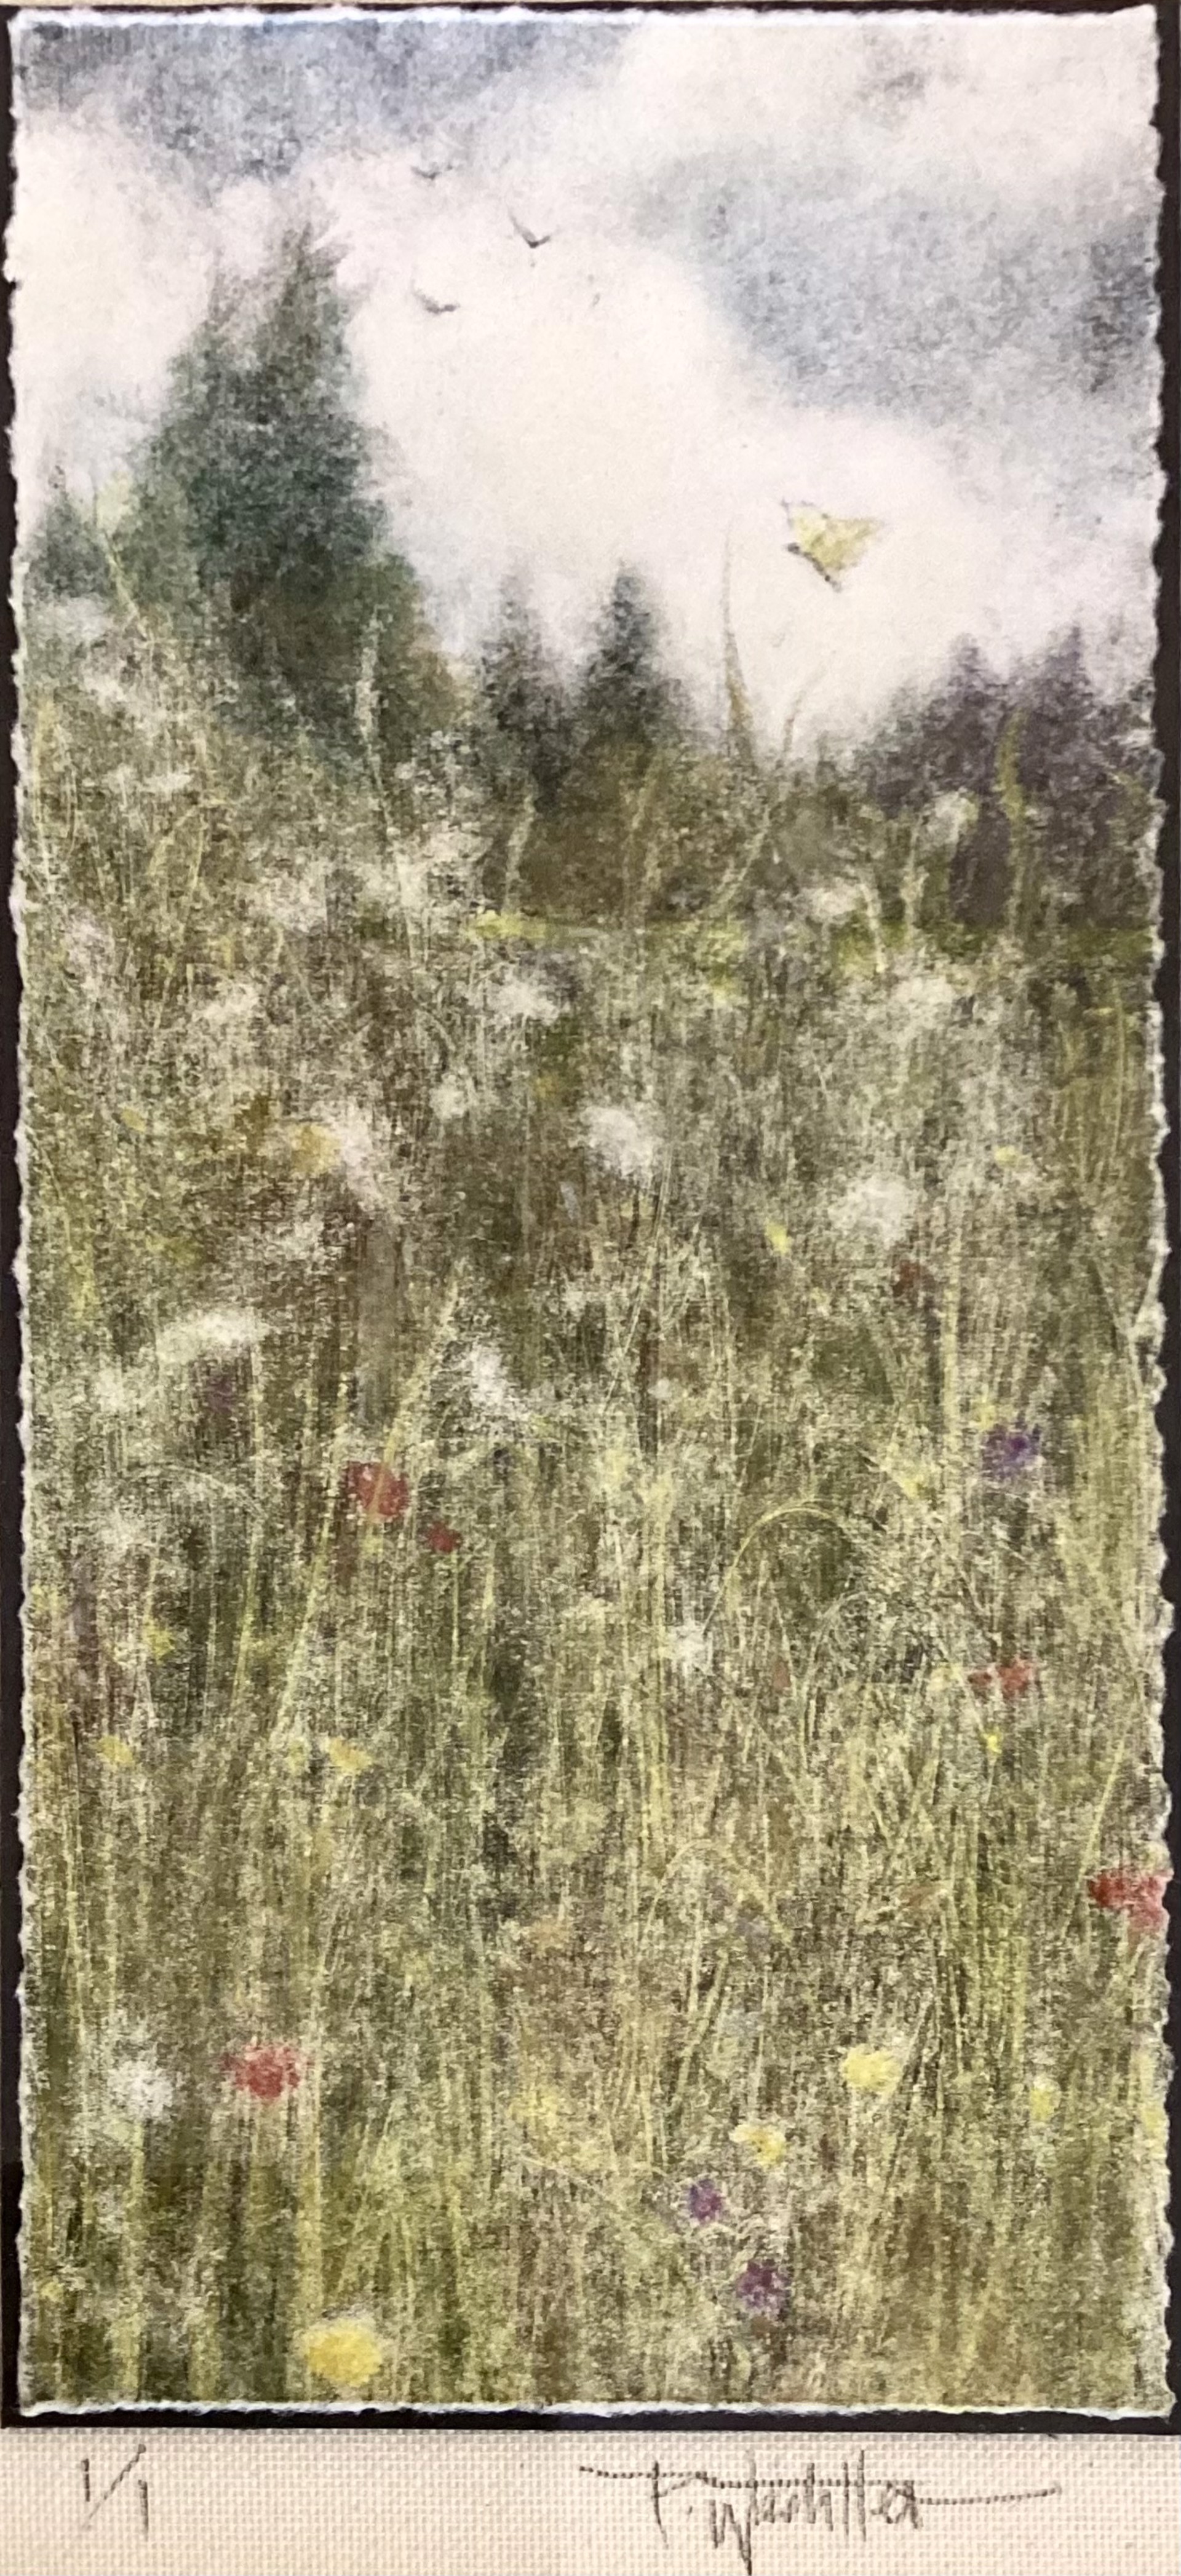 Meadow by Pamela Wachtler